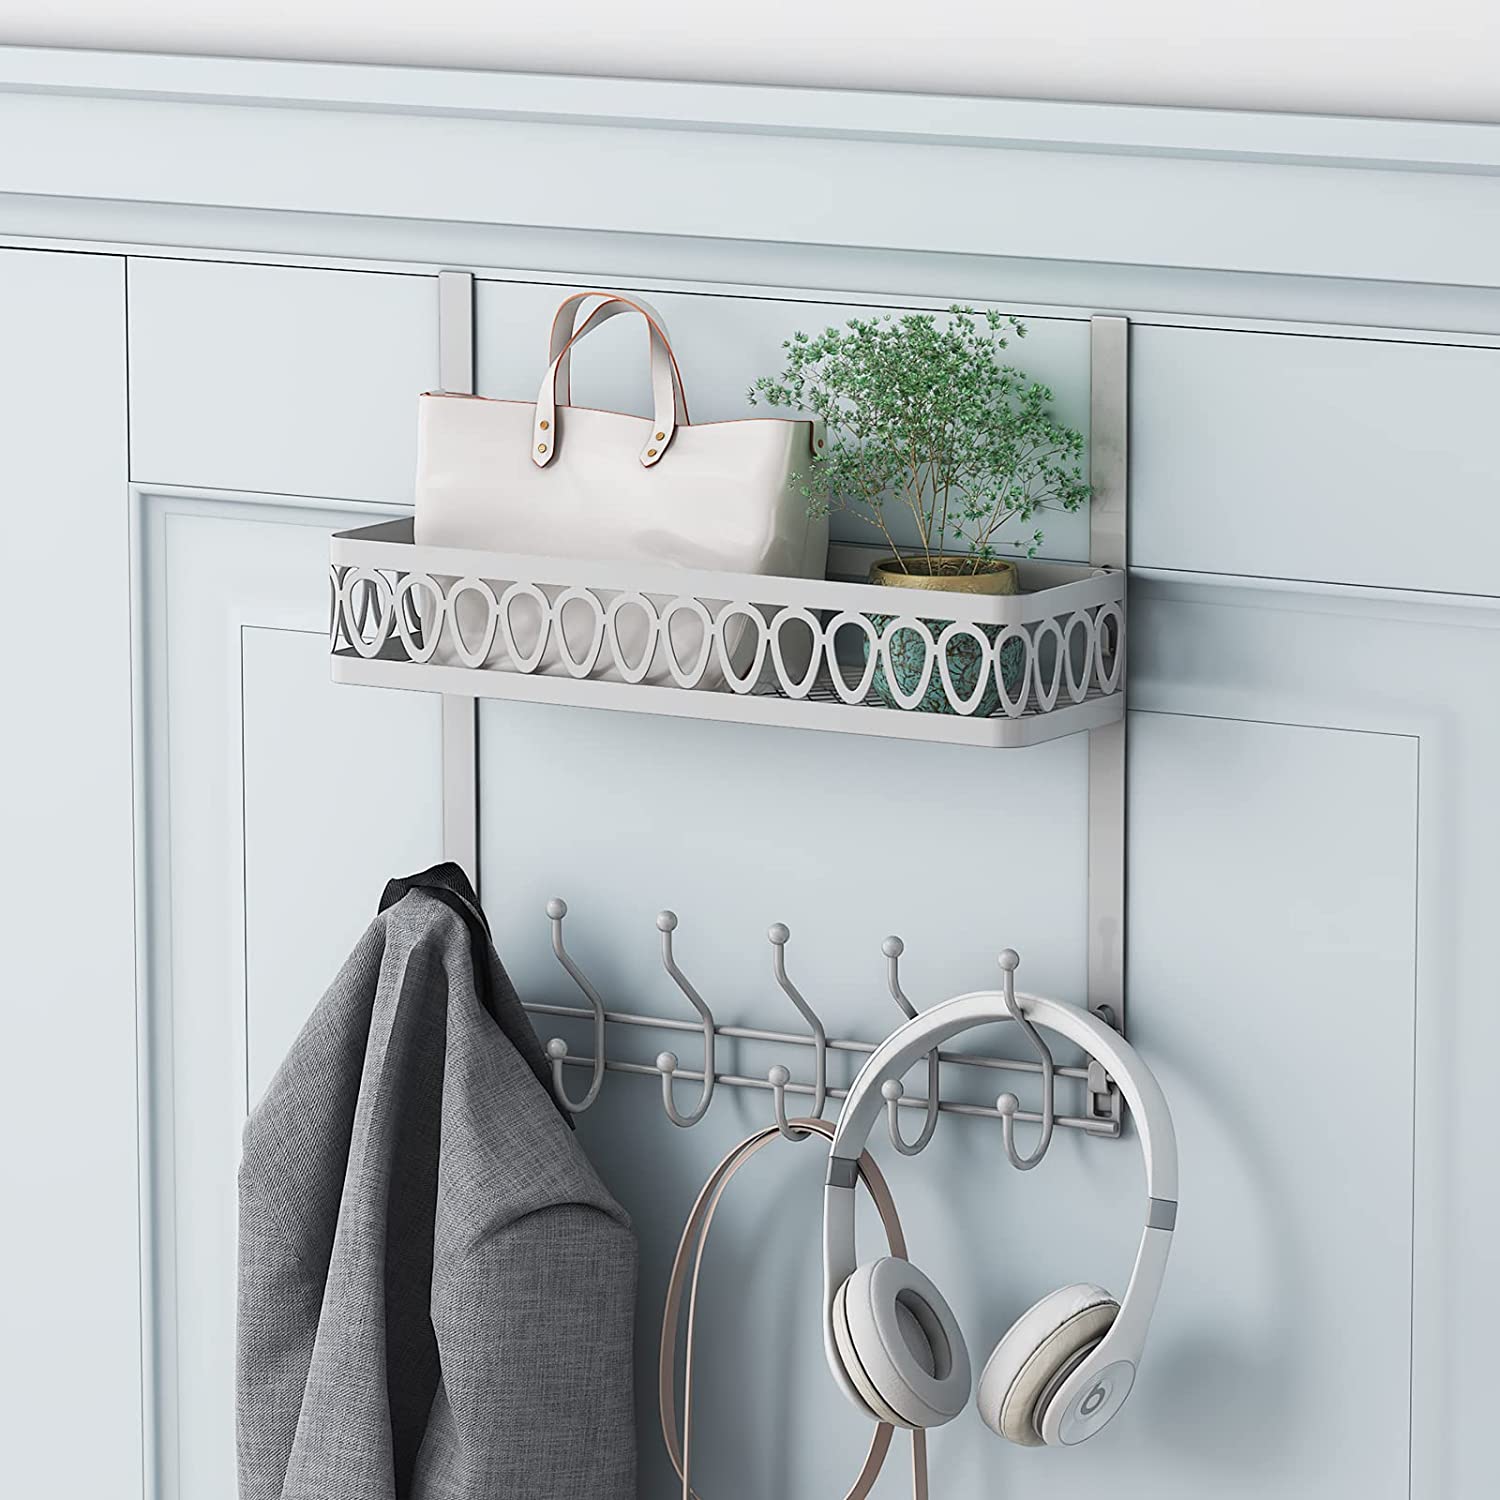 NEX Over The Door Coat Rail Shelf 5 Hooks With Basket Small Stuff Organize Hook Bathroom Door For Towels Jackets Scarves Grey 